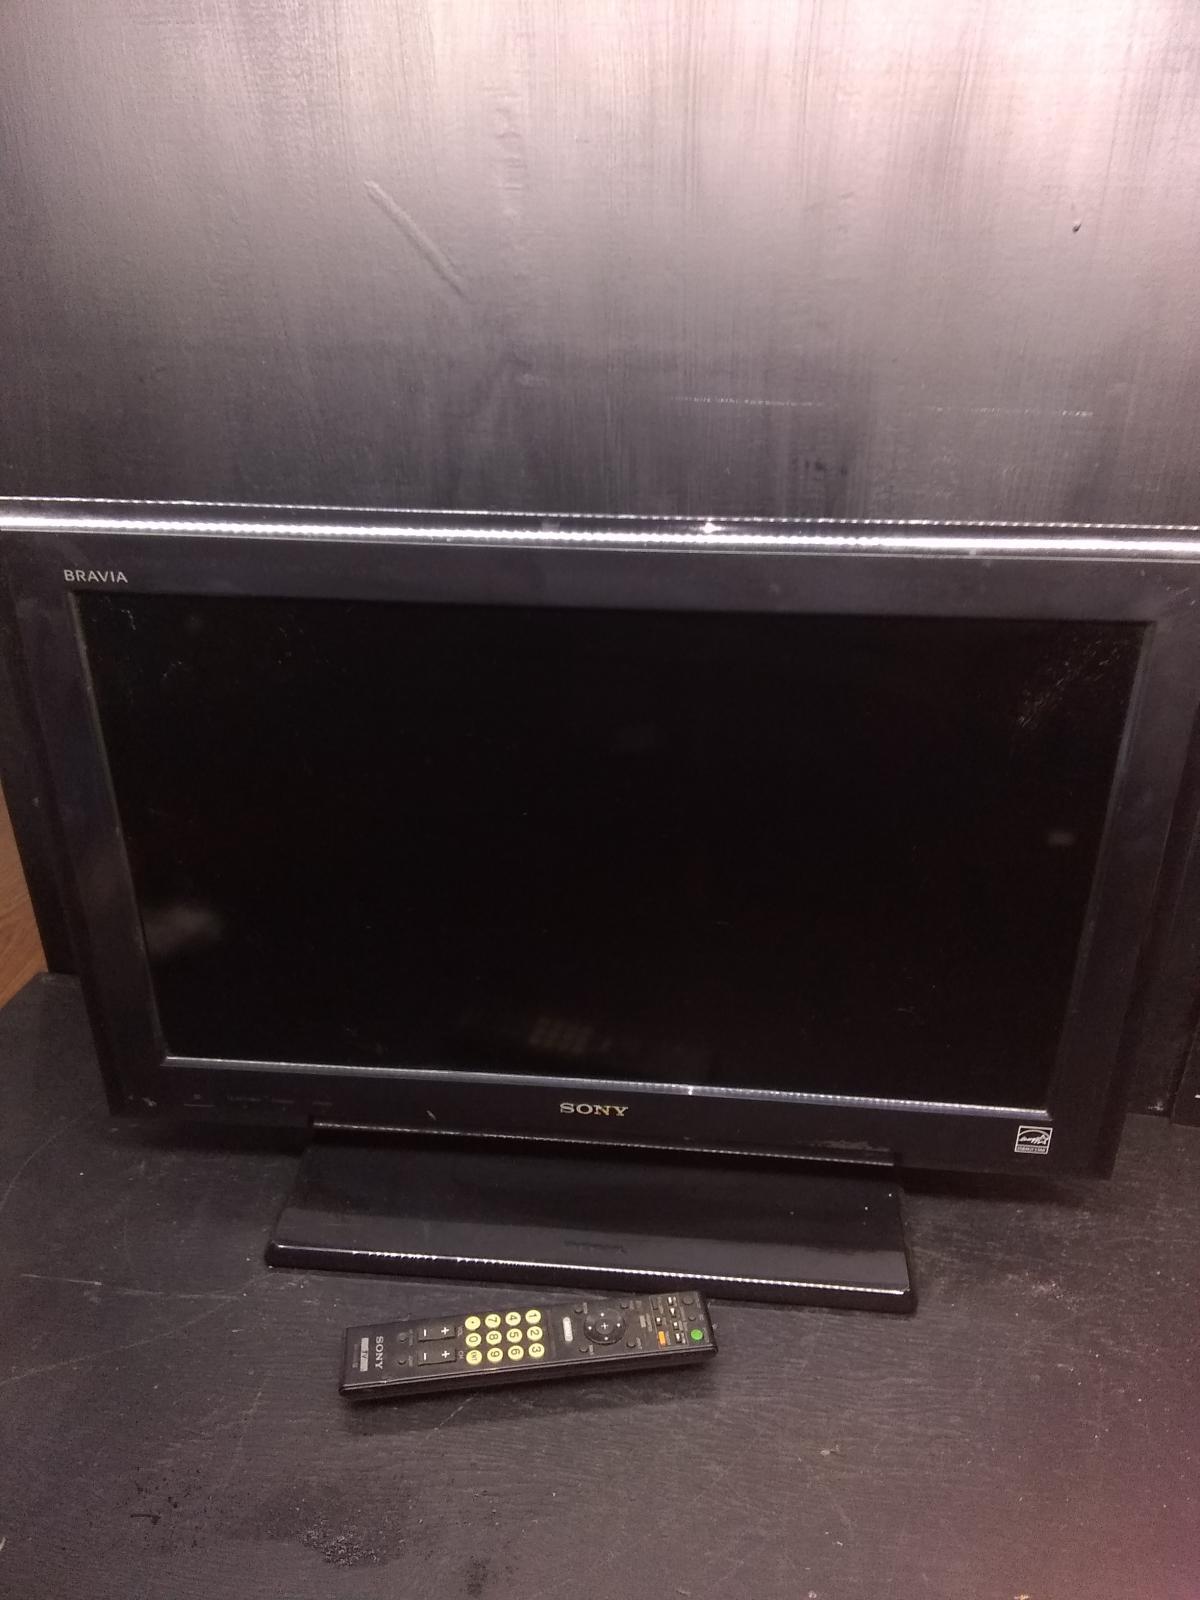 Sony Bravia 26" TV Model# KDL-26L5000